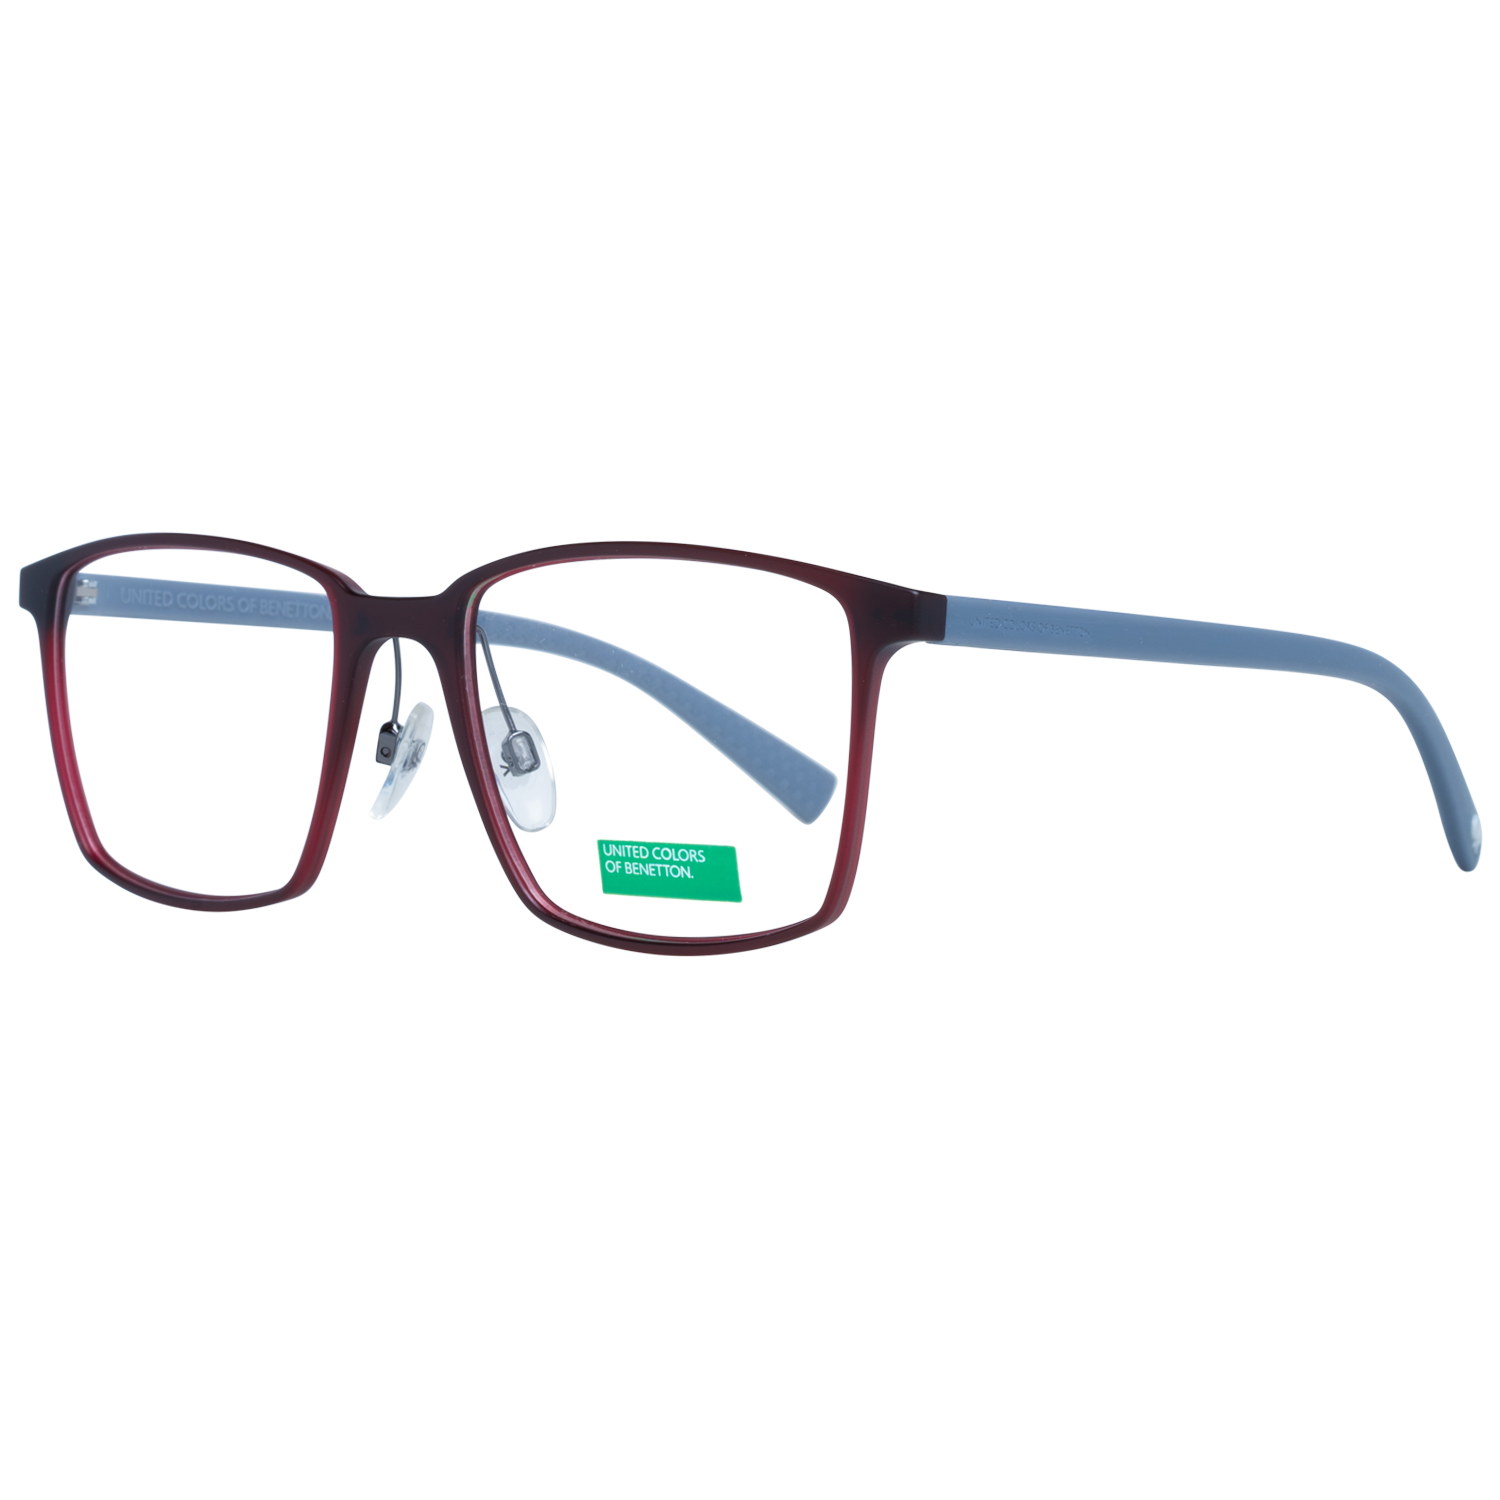 Benetton Frames Benetton Glasses Frames BEO1009 252 53 Eyeglasses Eyewear UK USA Australia 